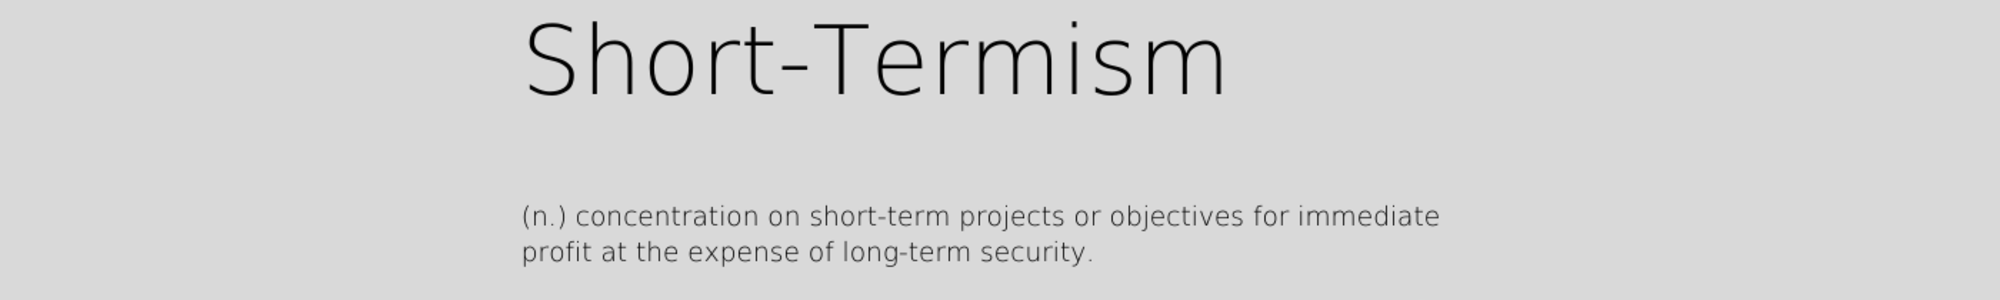 Short Termism Definition